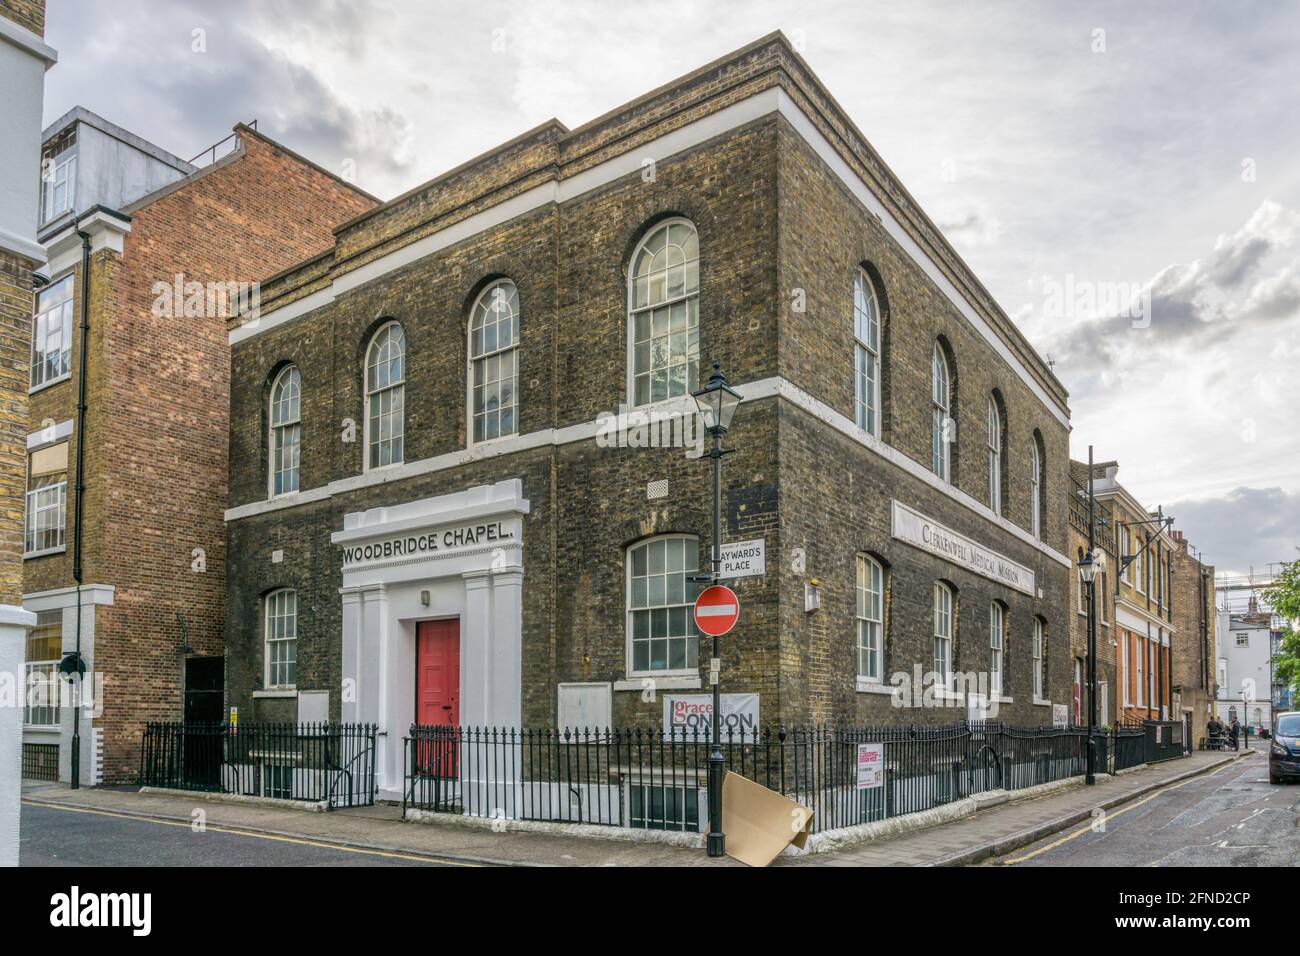 Die denkmalgeschützte Woodbridge Chapel & Clerkenwell Medical Mission von 1833. Früher eine unabhängige Kapelle, die heute von der Gracelife London Church genutzt wird. Stockfoto